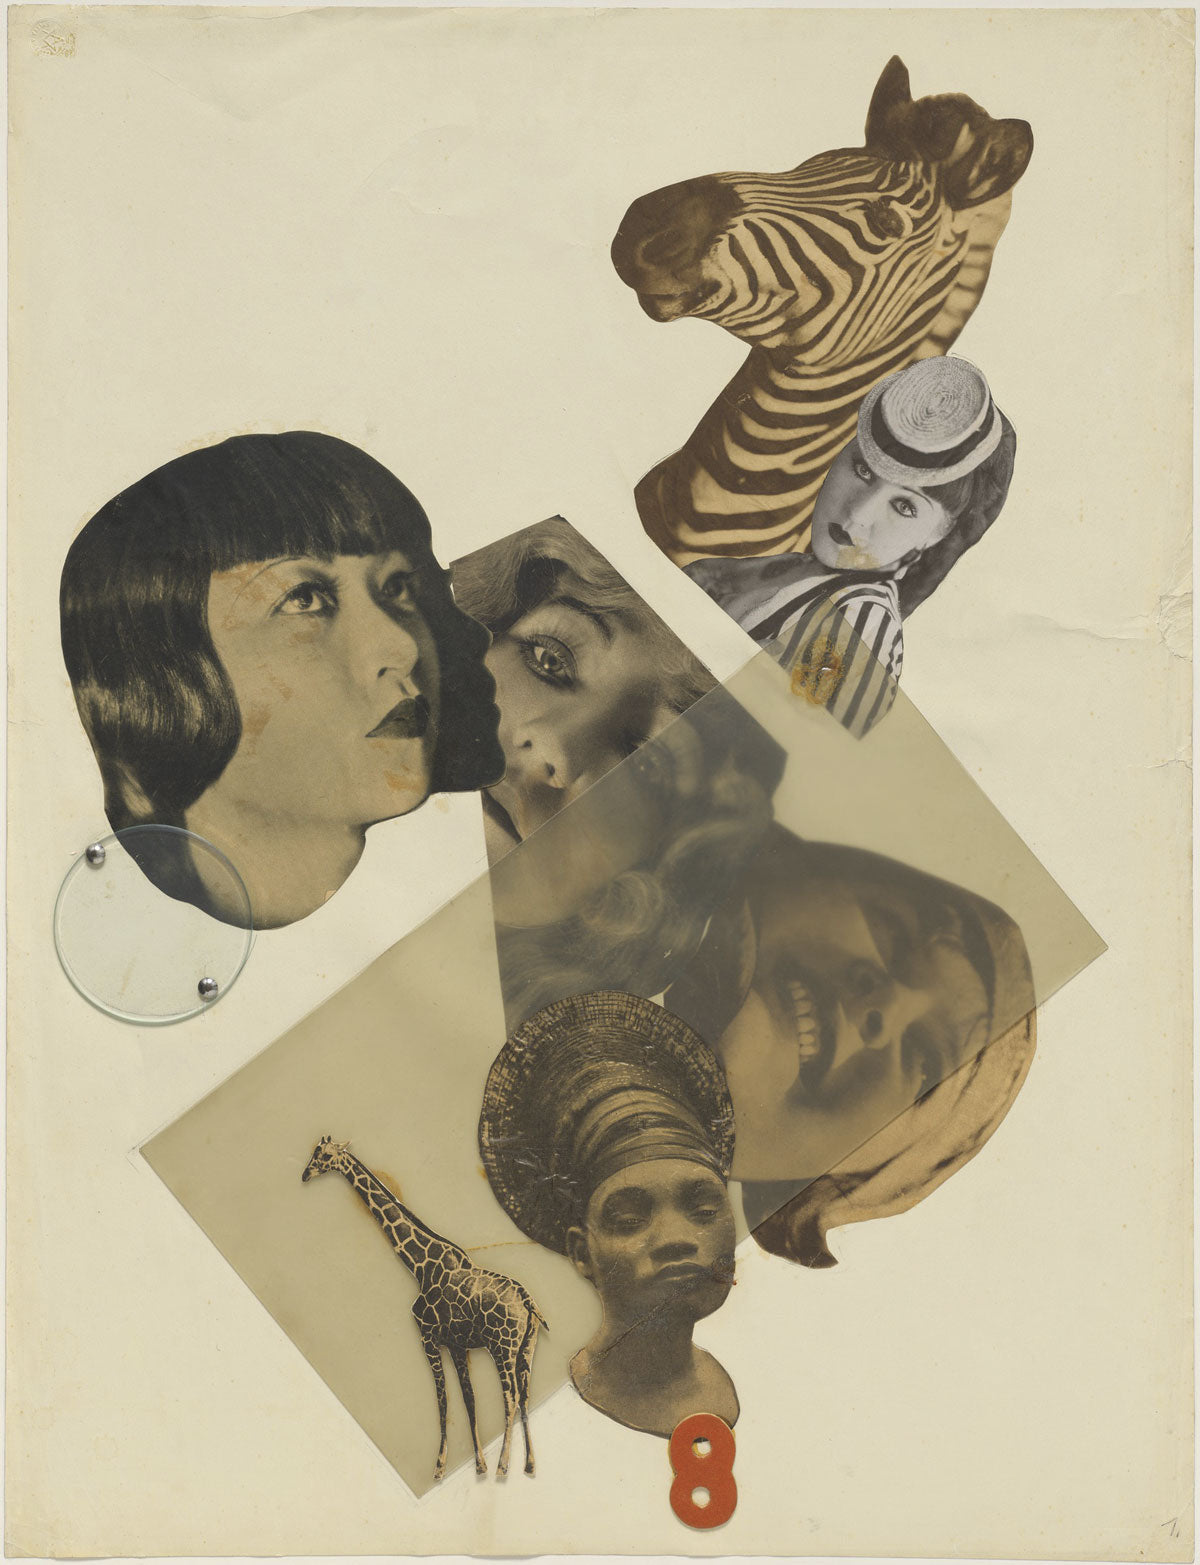 Marianne Brandt. Untitled (with Anna May Wong), 1929. Collage de papeles cortados e impresos y acetato de celulosa, vidrio, remaches metálicos y flocado sobre papel. 